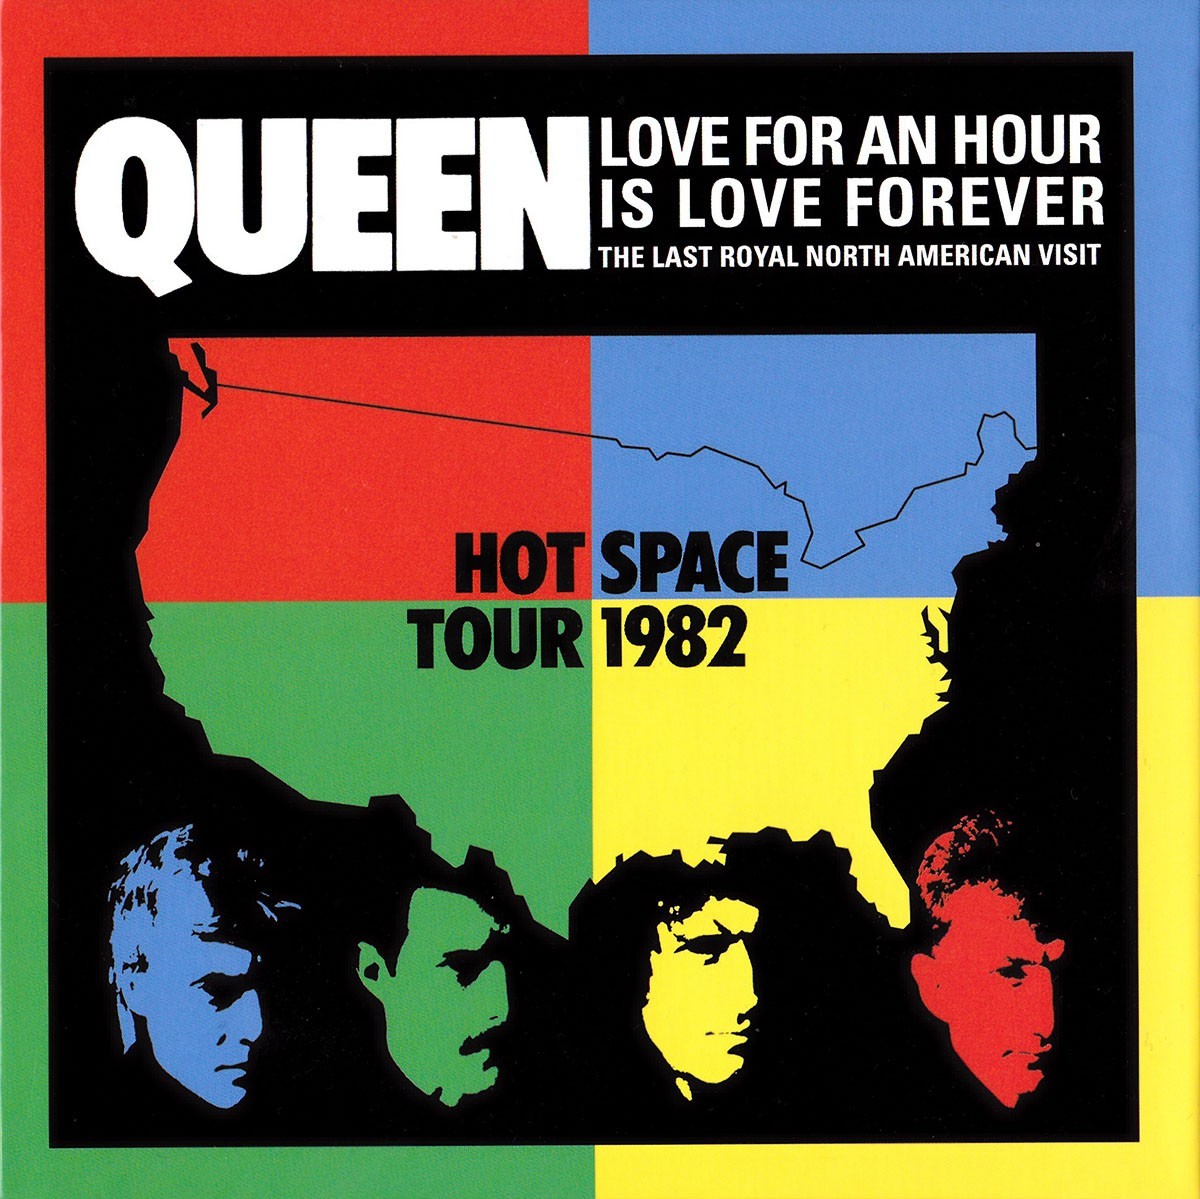 Couverture de Queen Hot space Tour 1982